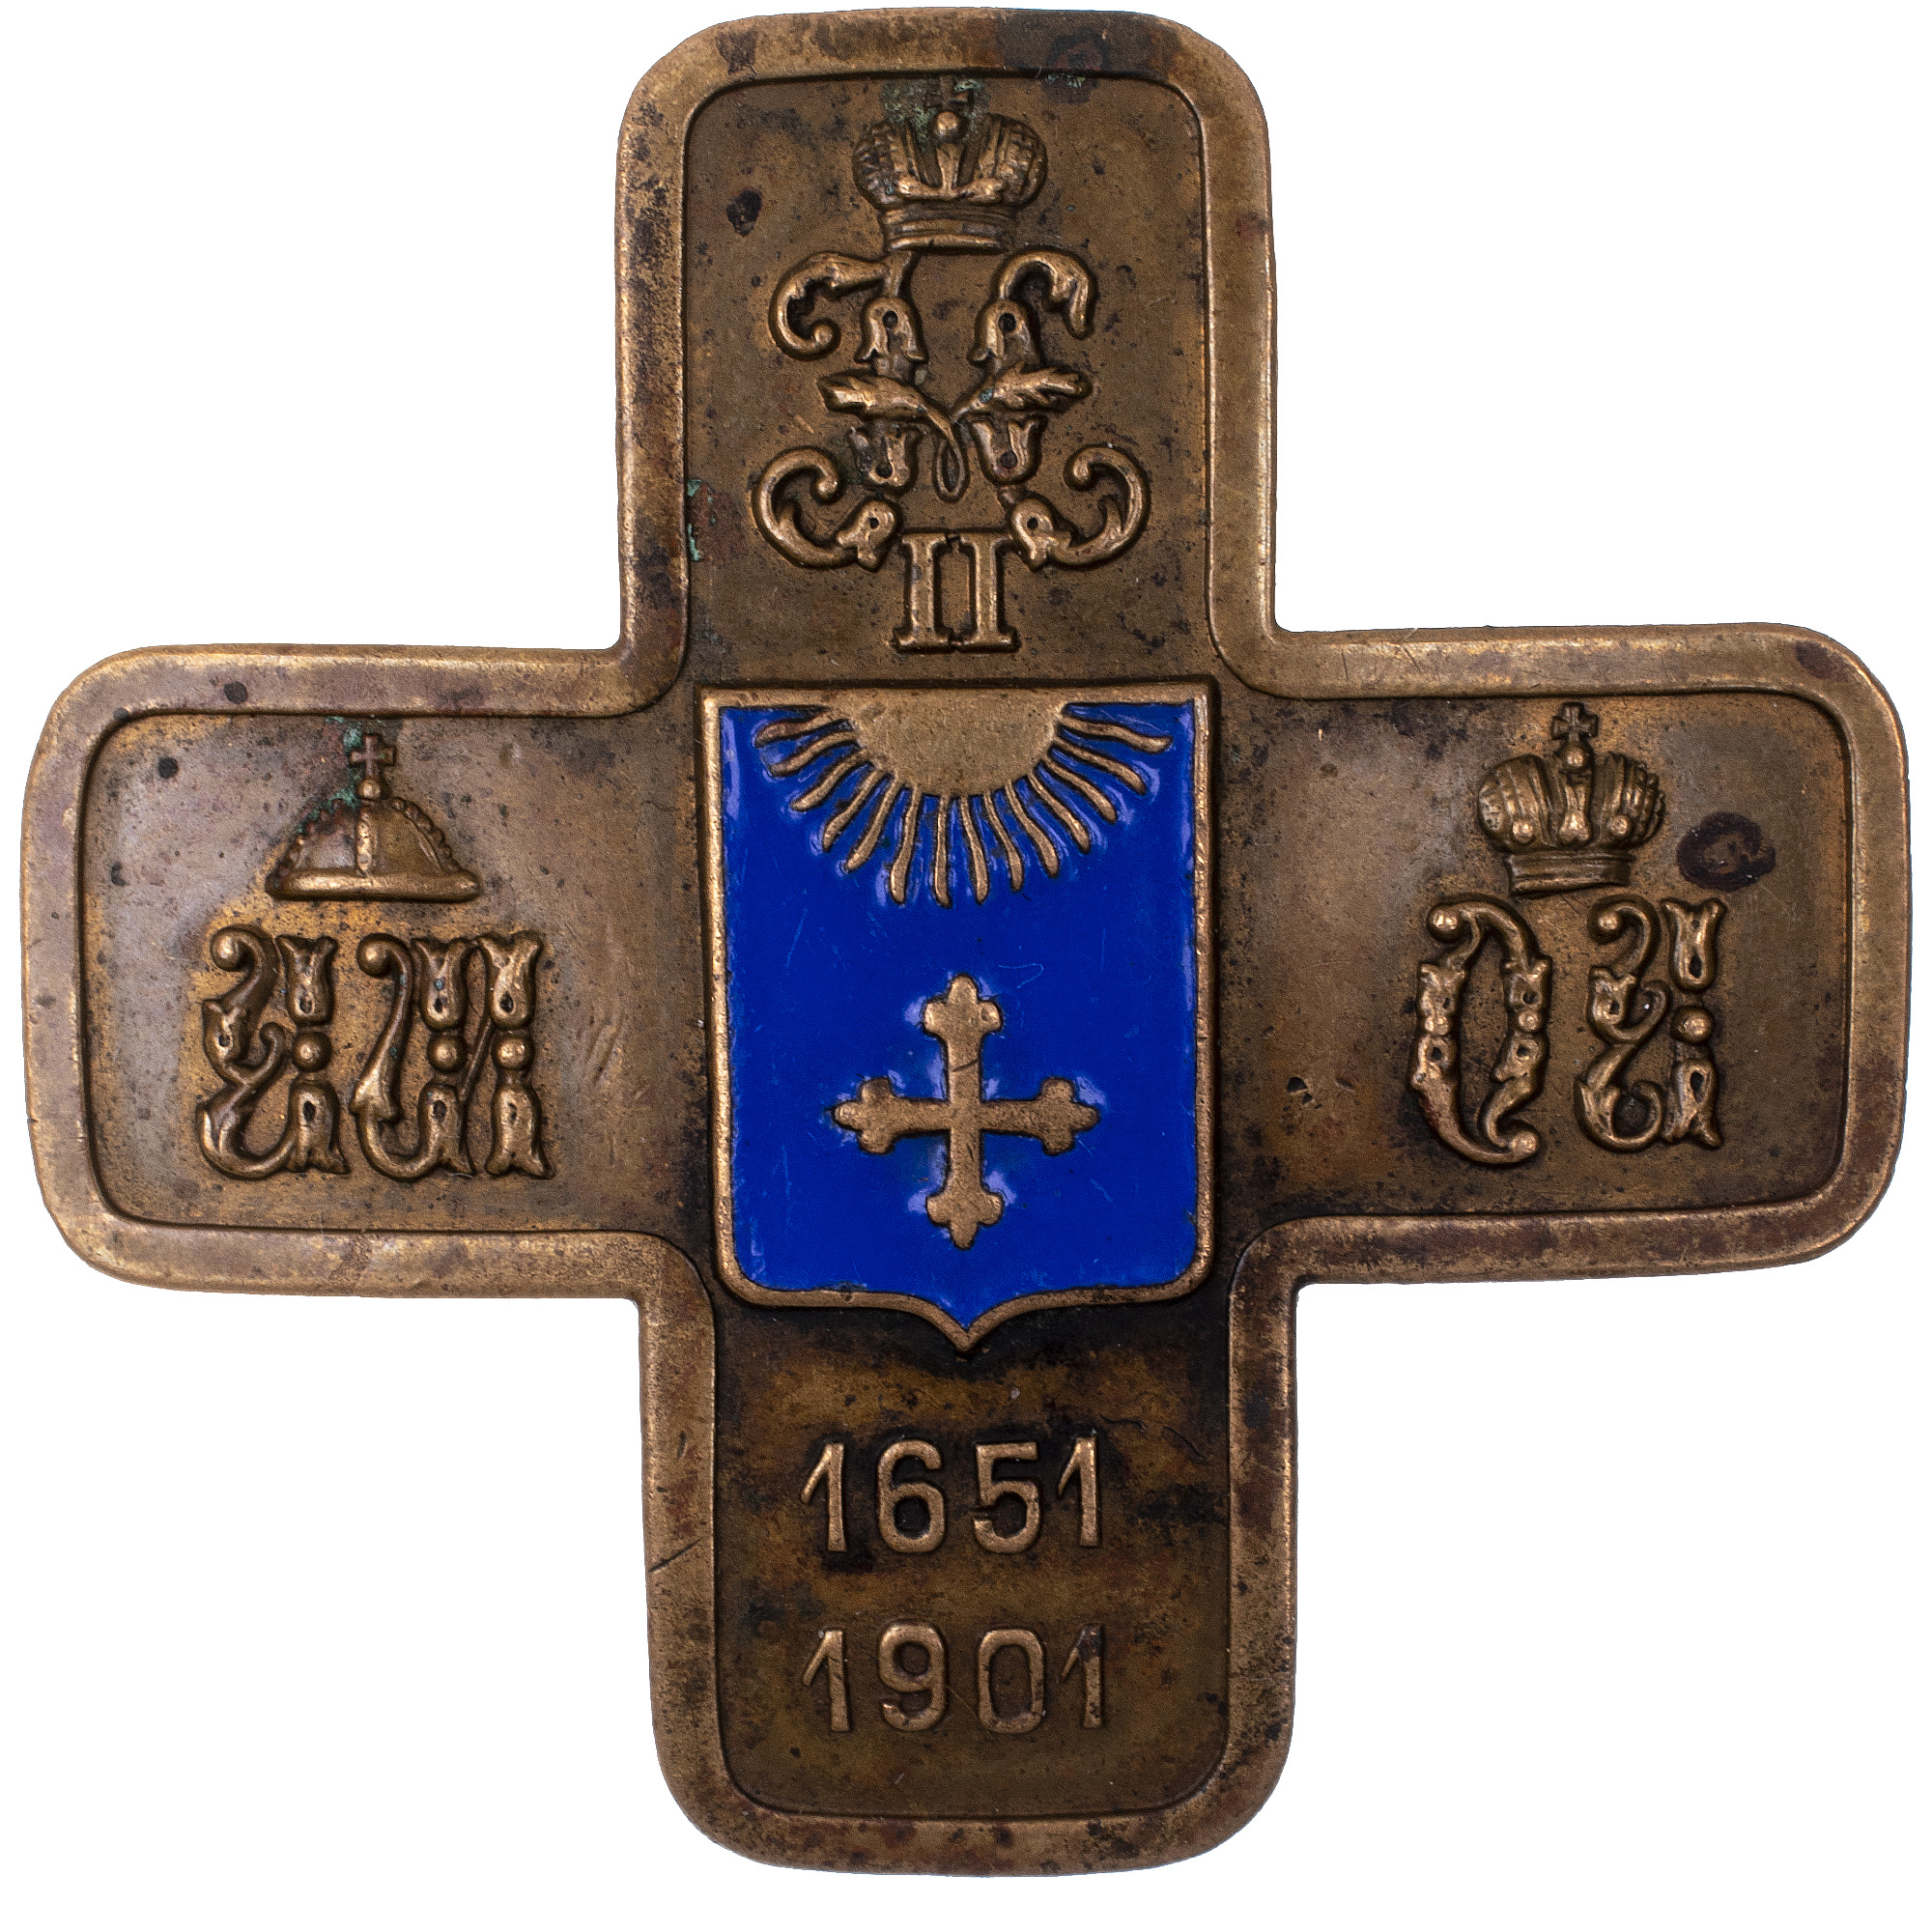 Знак 12 - го гусарского Ахтырского Е. И. В. Великой Княгини Ольги Александровны полка (для нижних чинов).